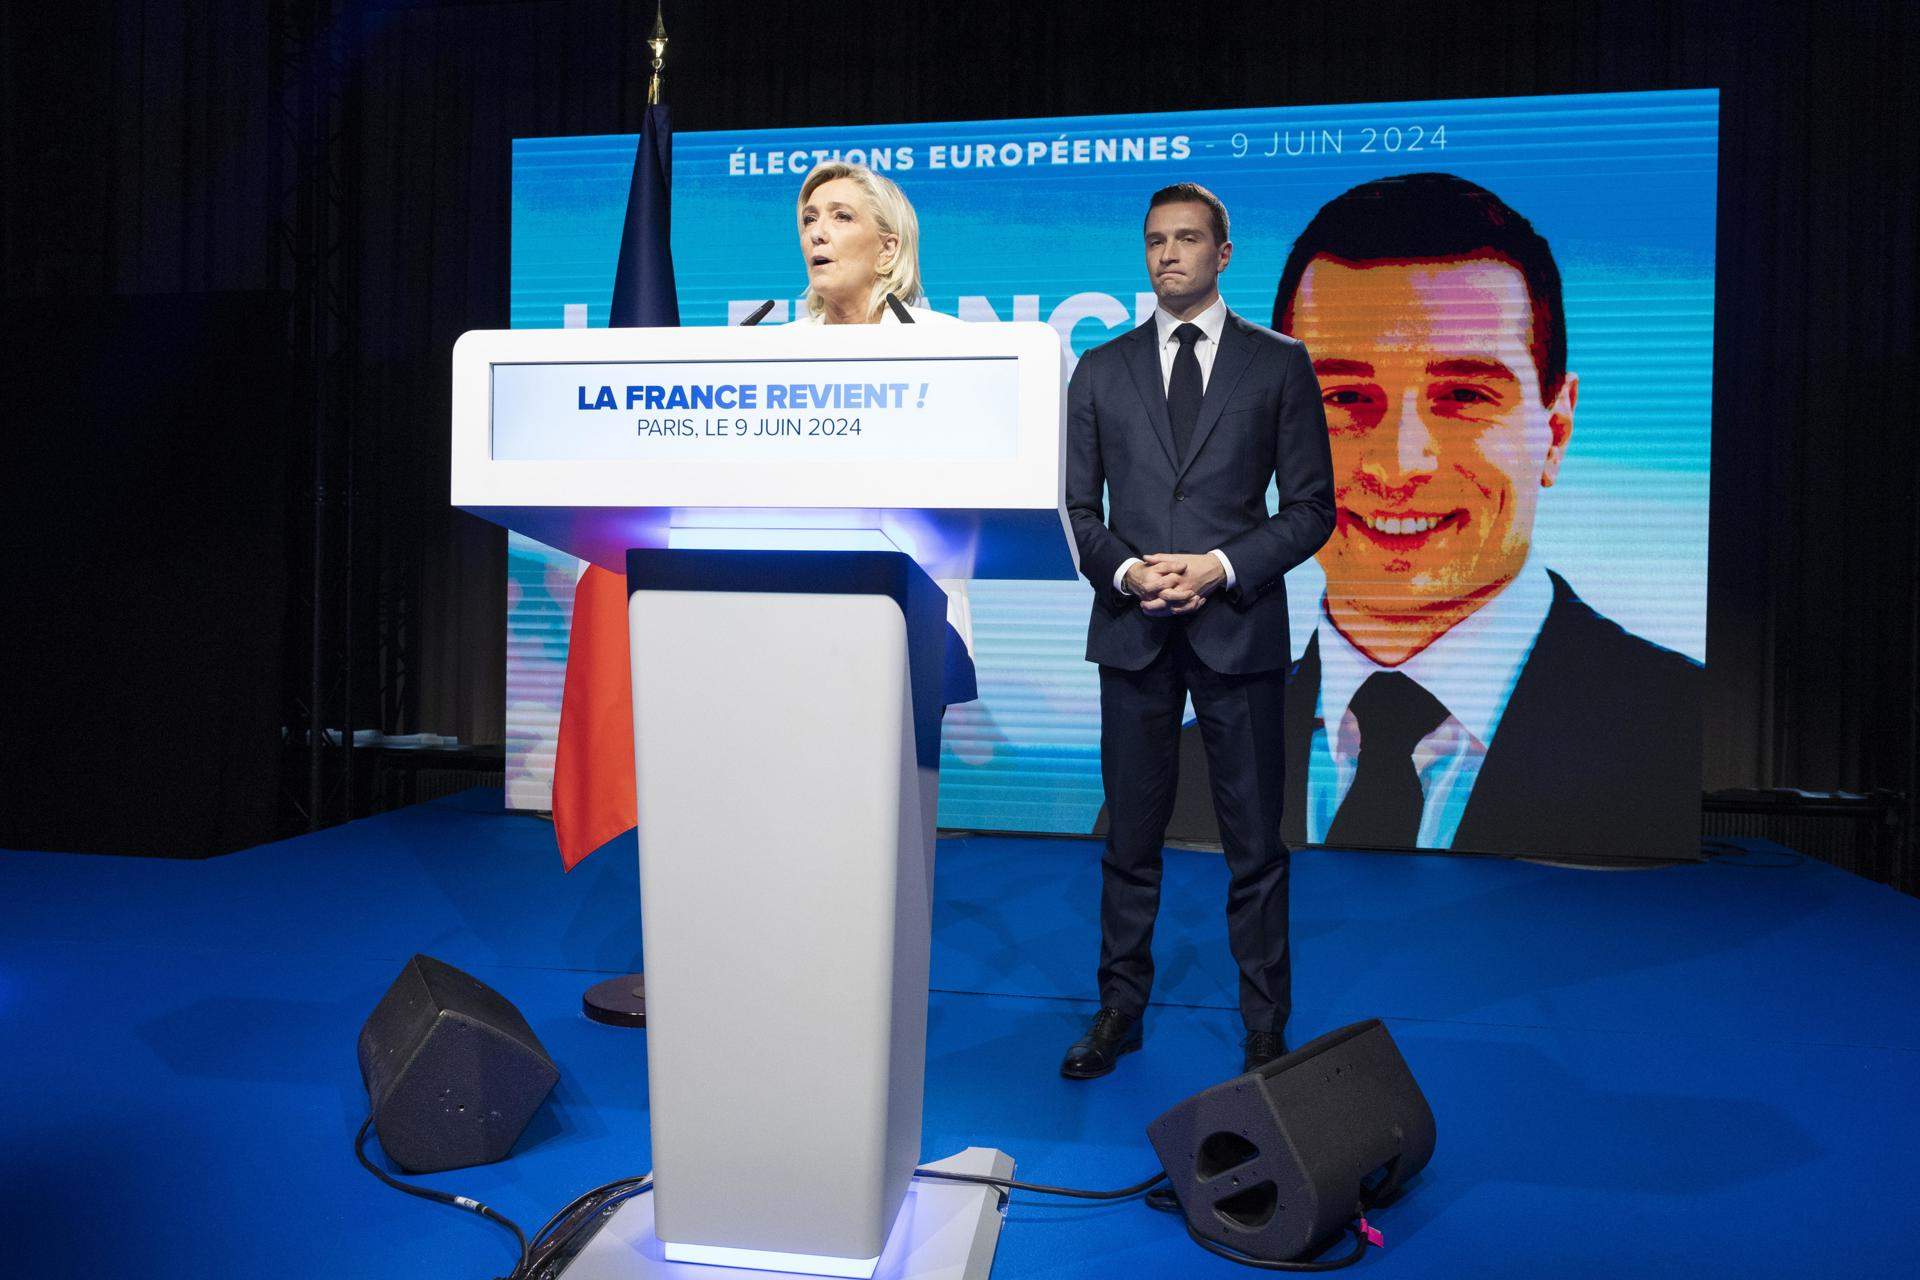 Muere la eurodiputada corsa Nathaly Antona, del partido de Marine Le Pen, a los 49 años